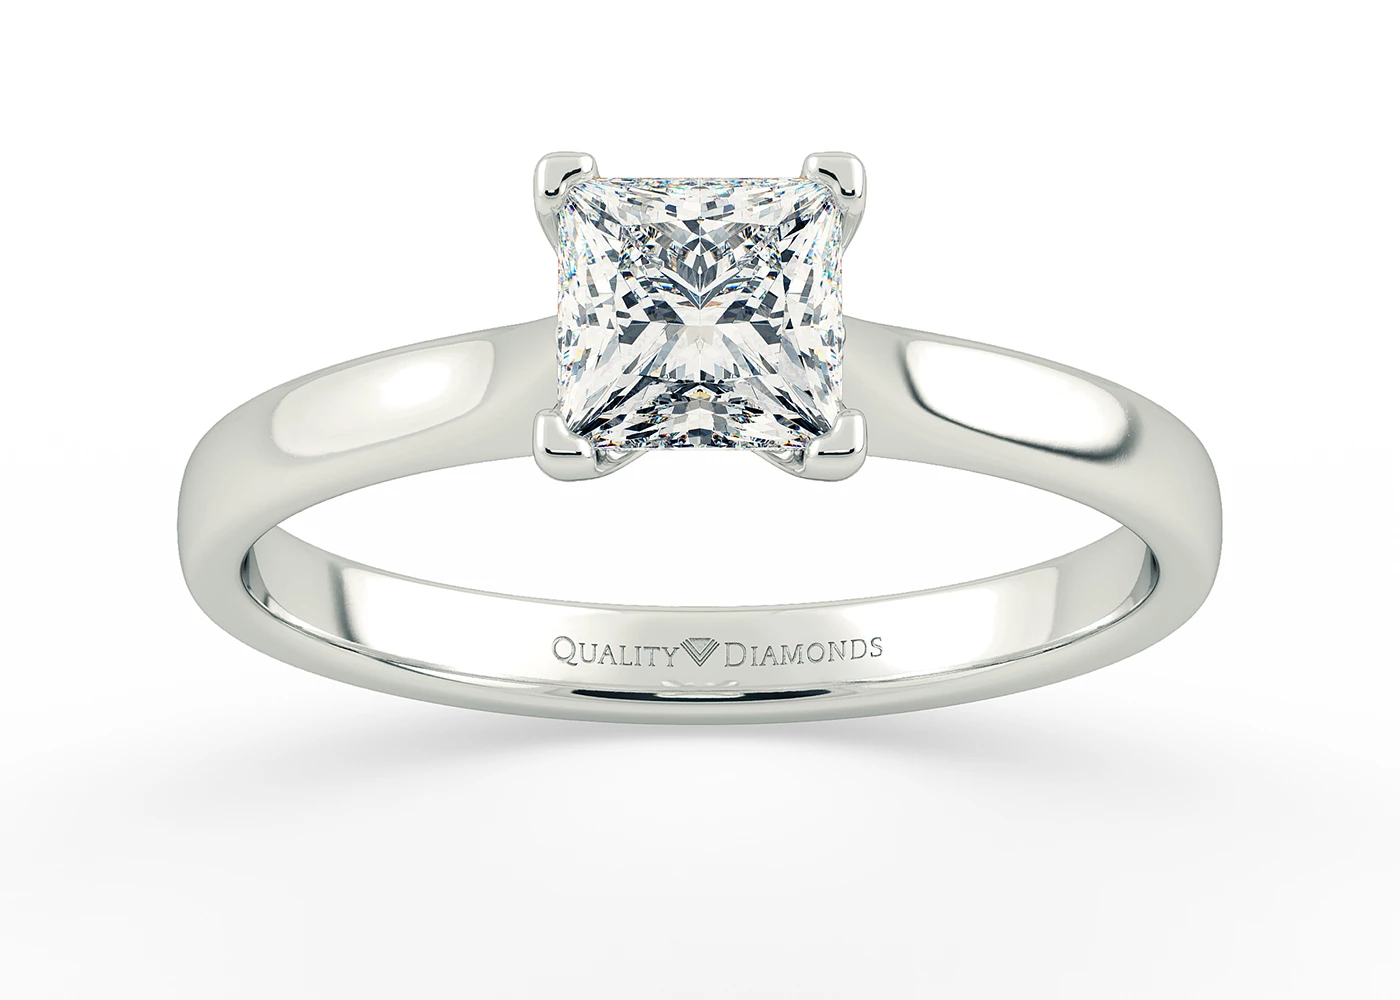 Princess Amara Diamond Ring in 9K White Gold